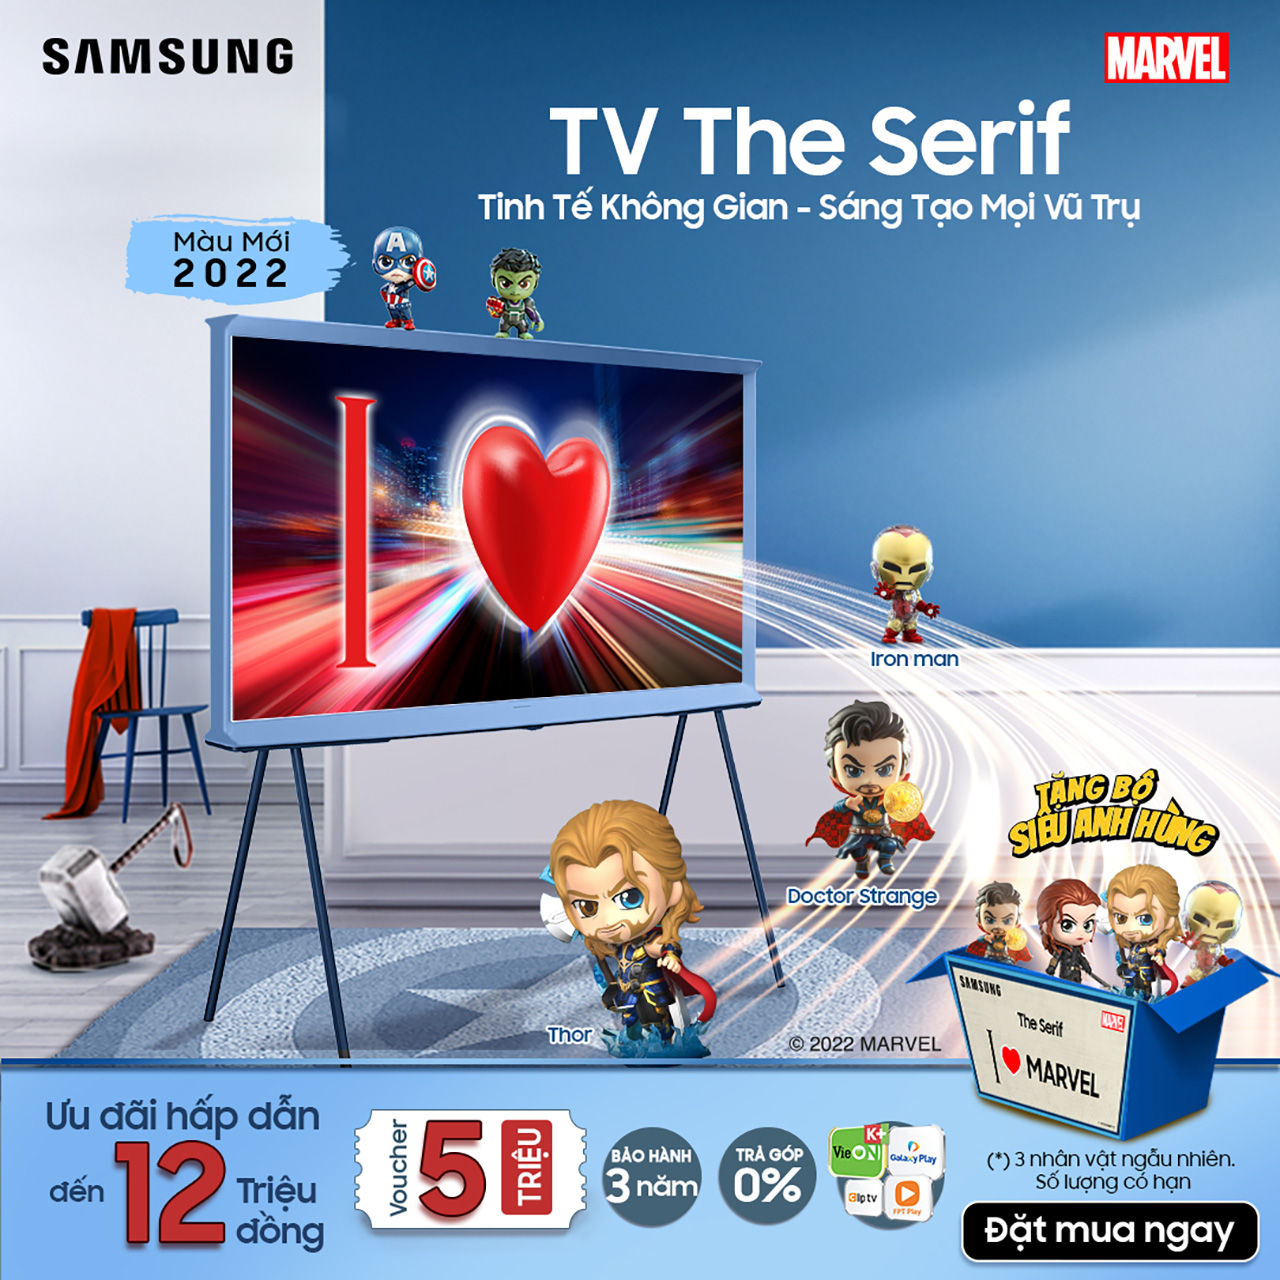 TV The Serif có thêm màu mới, kích thước mới - TheSerif2022uudai